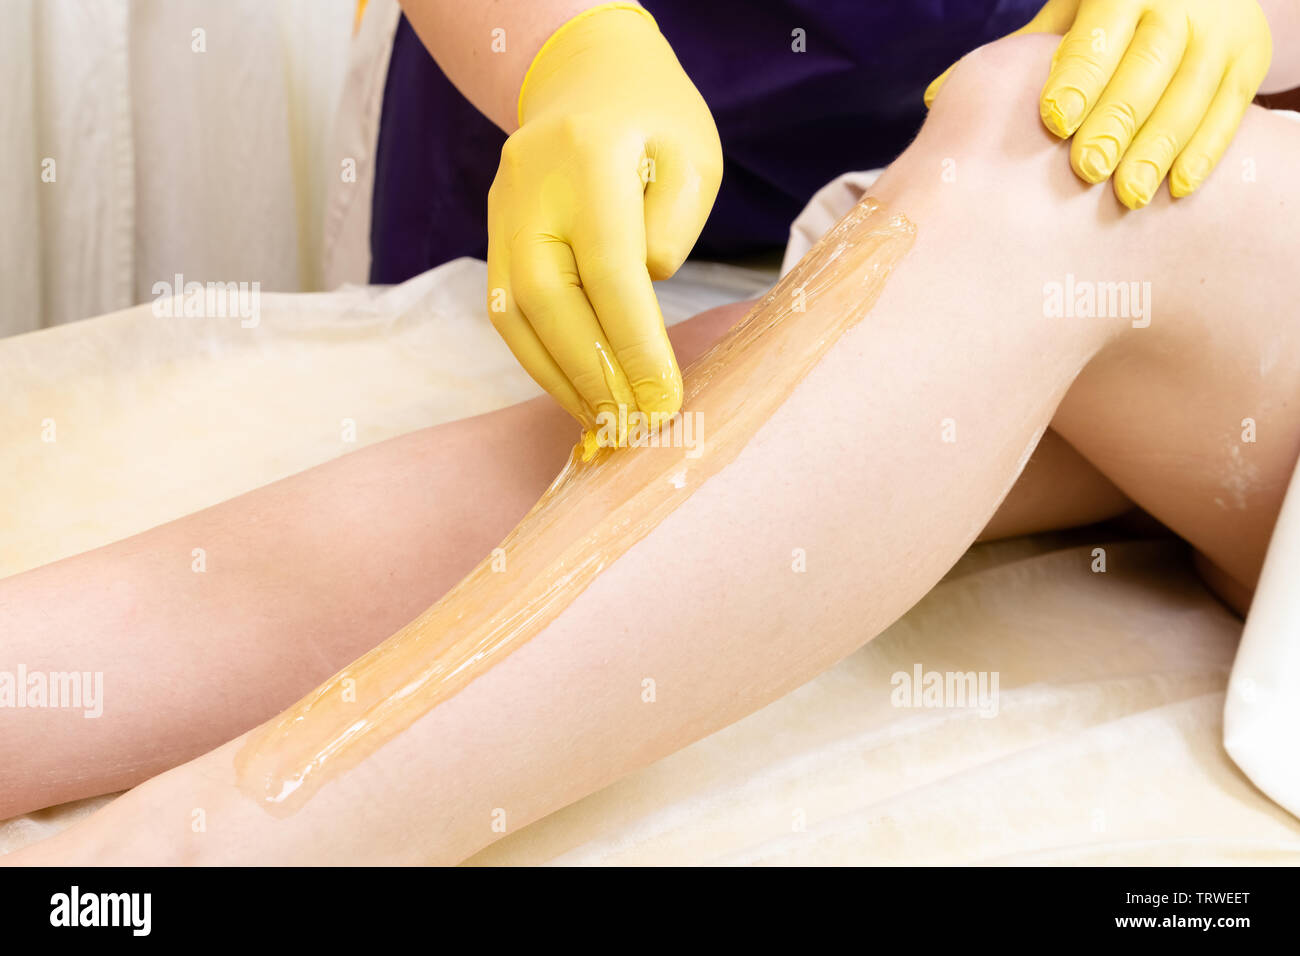 Methode der Haarentfernung Zuckerpaste zur Süßung c weiblichen Körper. Das Werk und die Methoden der Master angezeigt. Stockfoto